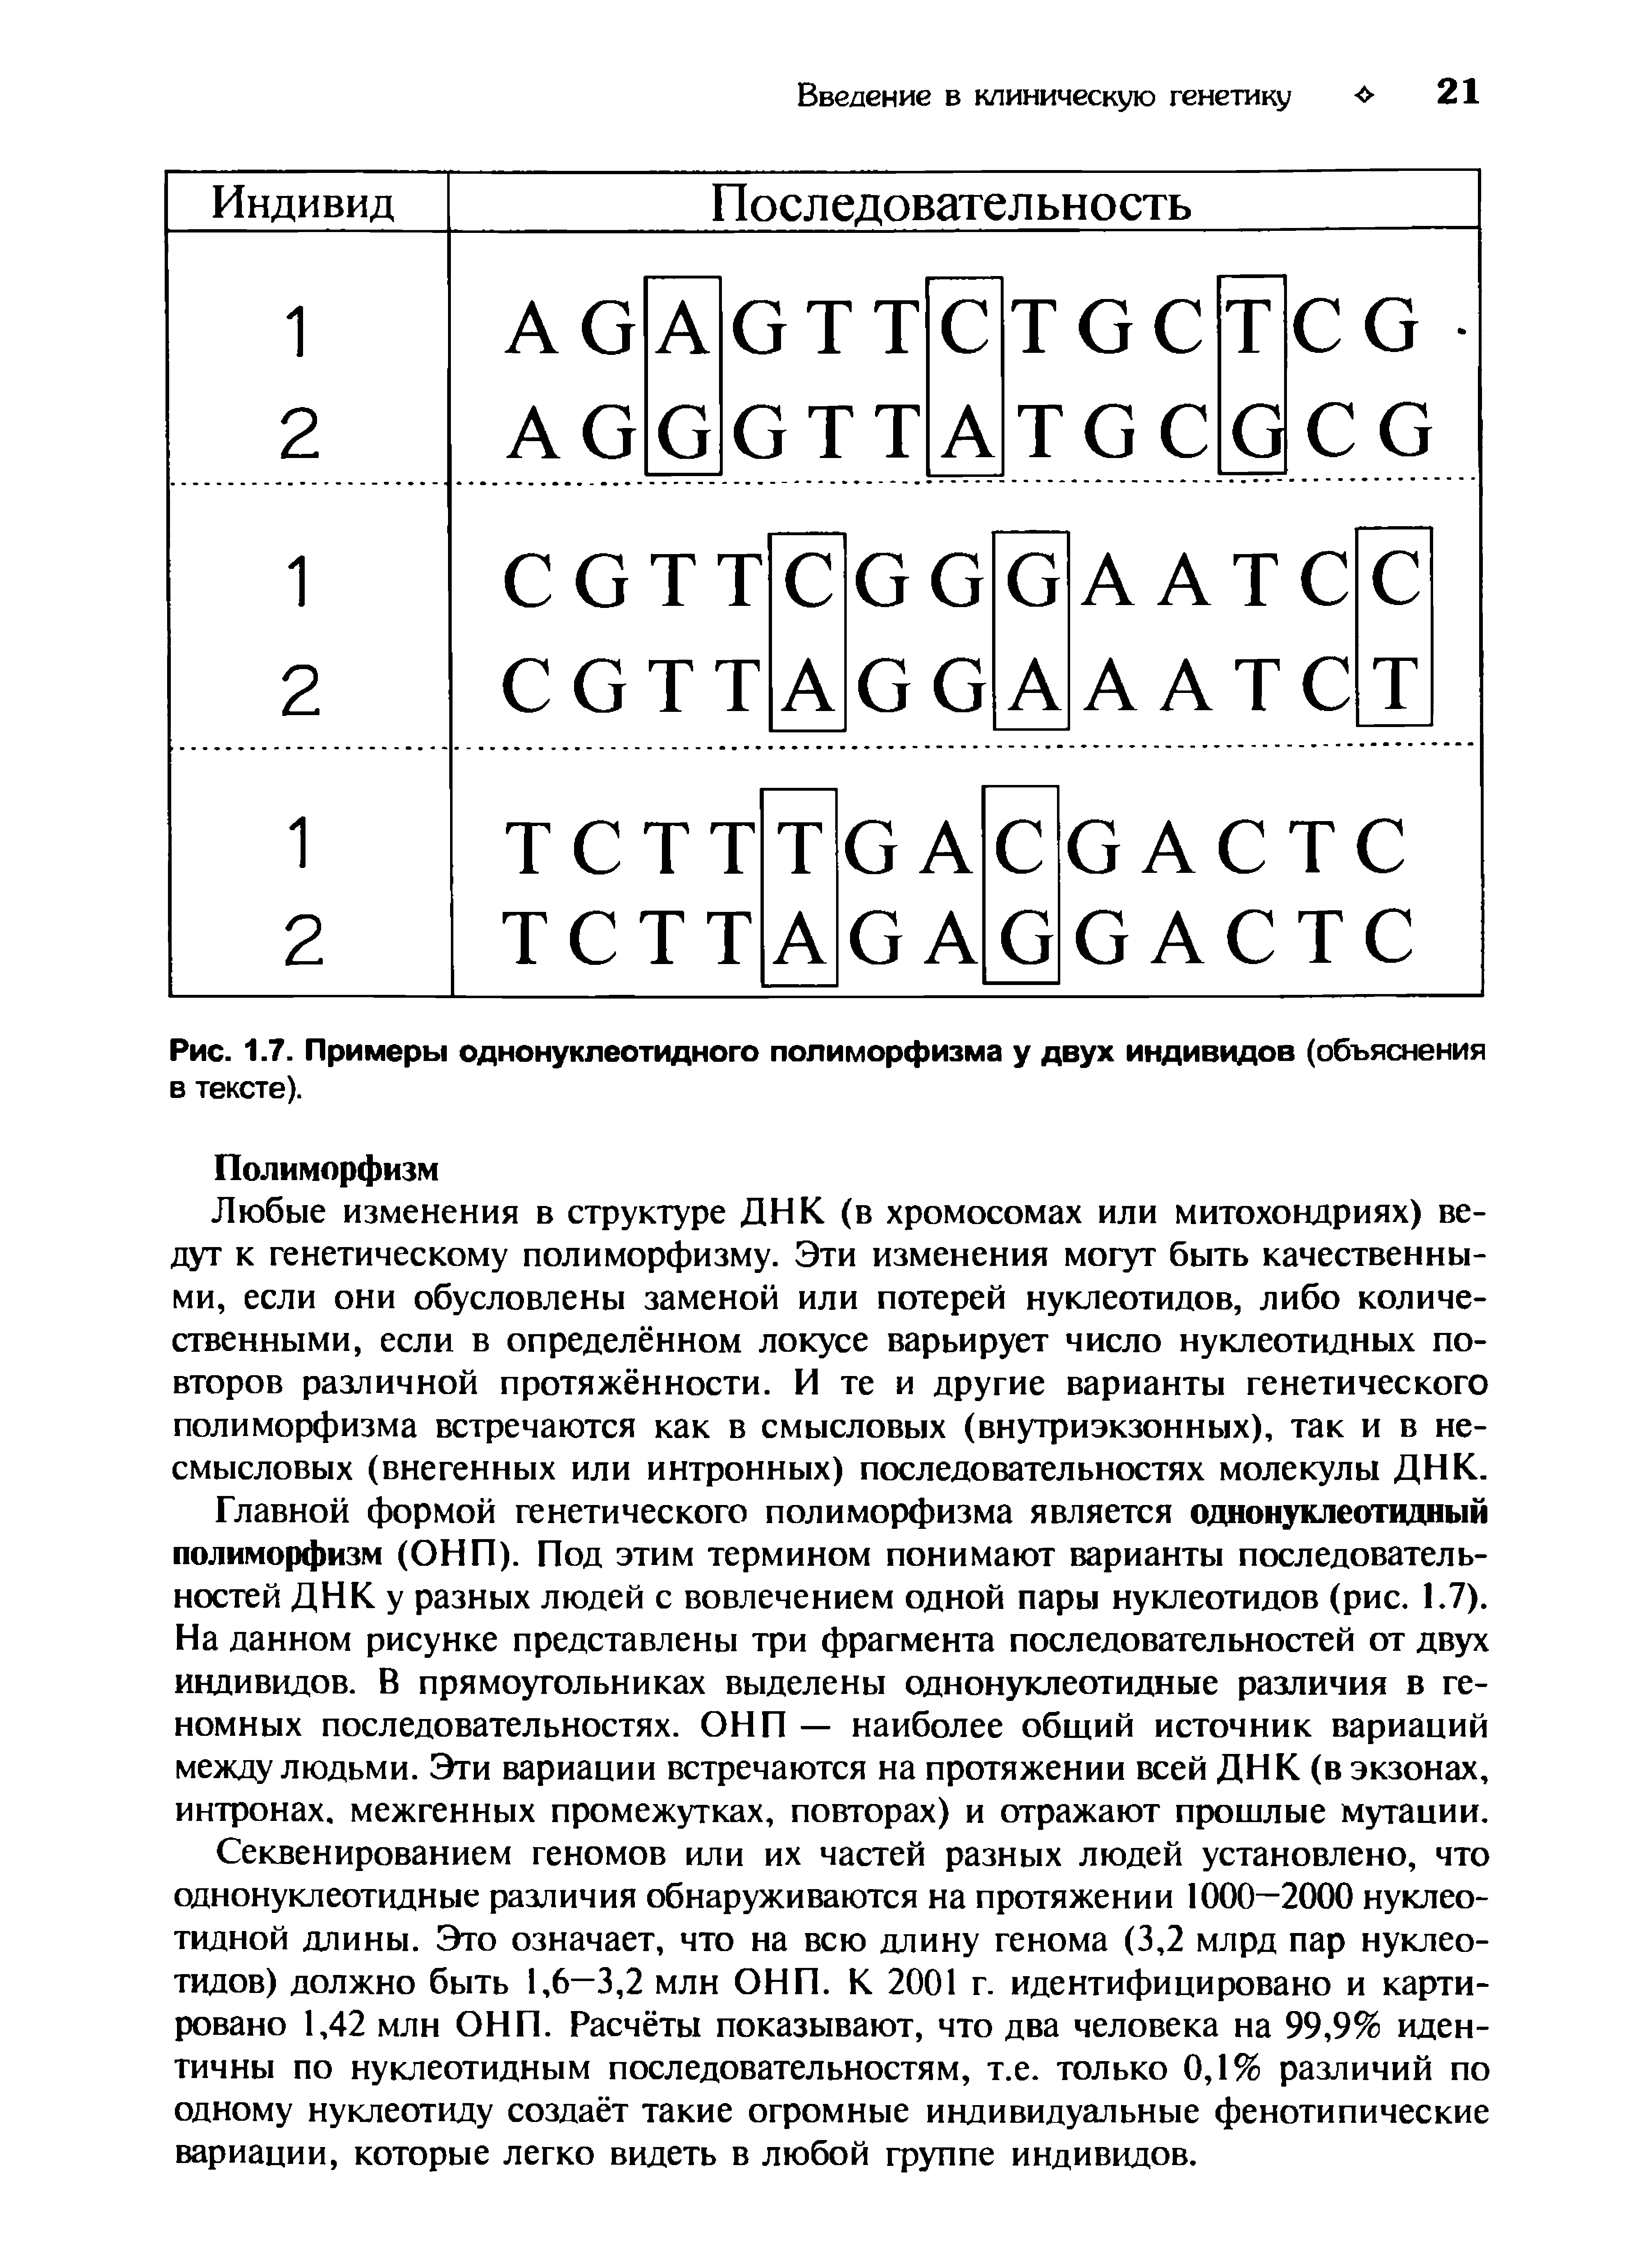 Рис. 1.7. Примеры однонуклеотидного полиморфизма у двух индивидов (объяснения в тексте).